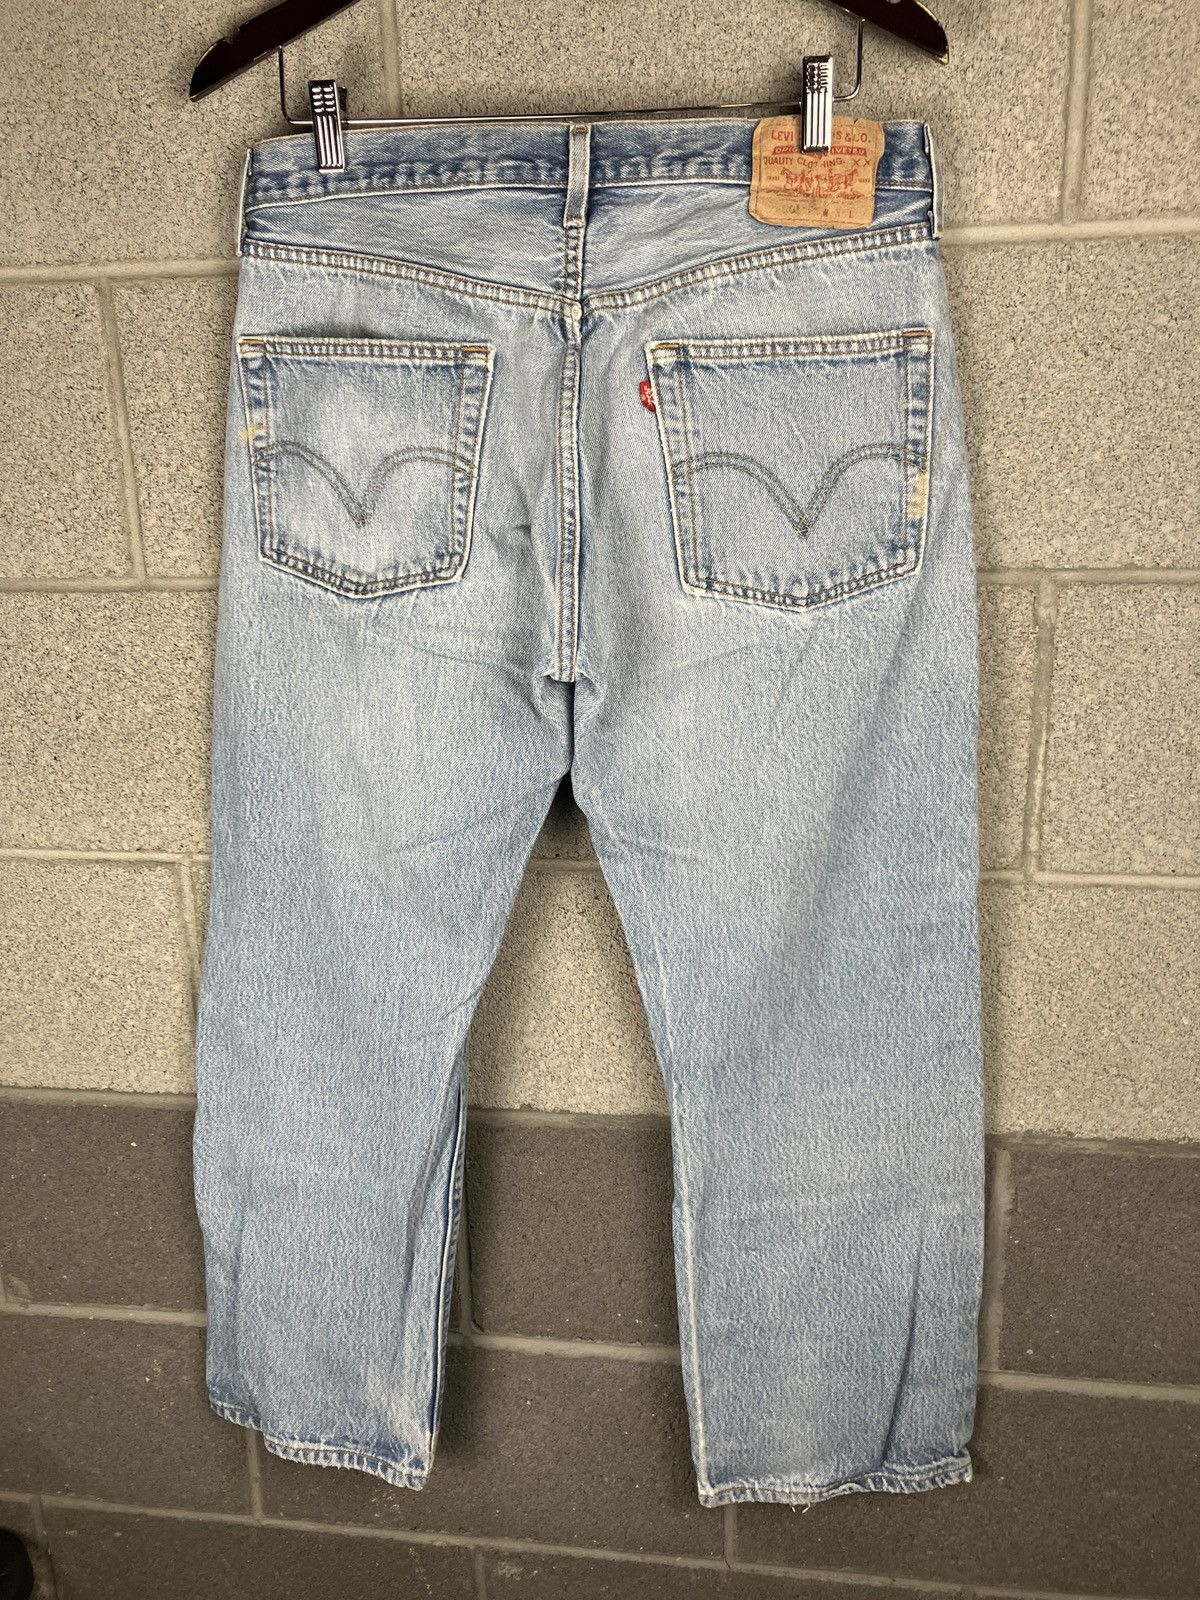 Vintage Vintage Levi’s 501 Distressed Painted Jeans 33 x 29 Size US 33 - 8 Thumbnail